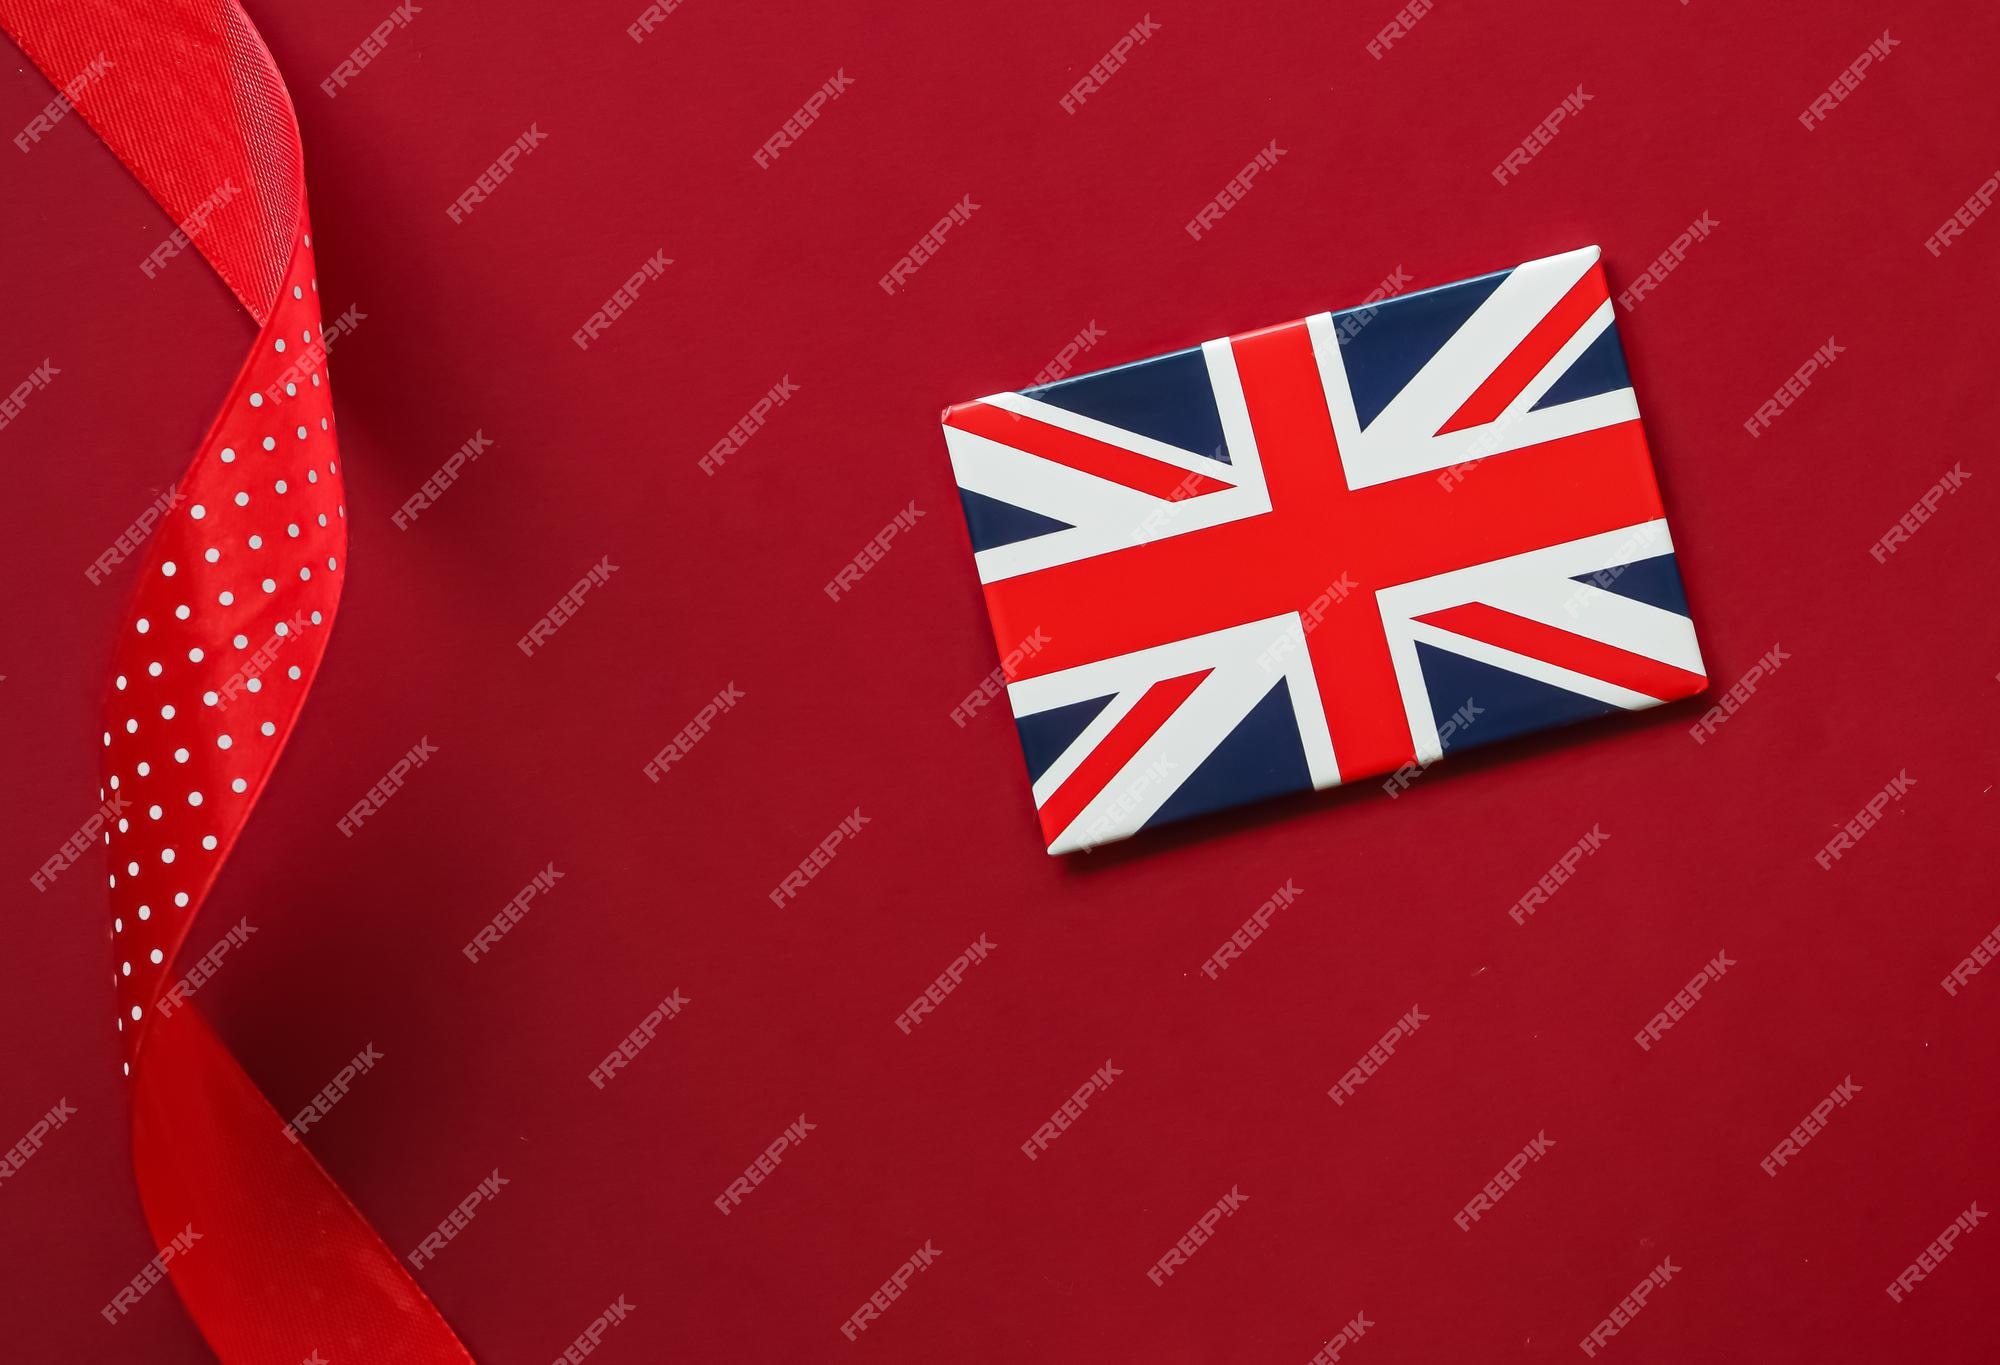 Hãy cùng chiêm ngưỡng lá cờ Union Jack đầy hào quang và ý nghĩa của đất nước Anh. Với sắc đỏ, xanh và trắng xen kẽ, lá cờ này chắc chắn sẽ thu hút sự chú ý của bạn với những điểm nổi bật và đặc biệt. Chắc chắn rằng hình ảnh lá cờ sẽ khiến bạn cảm thấy tự hào đến vô tận về nước Anh.